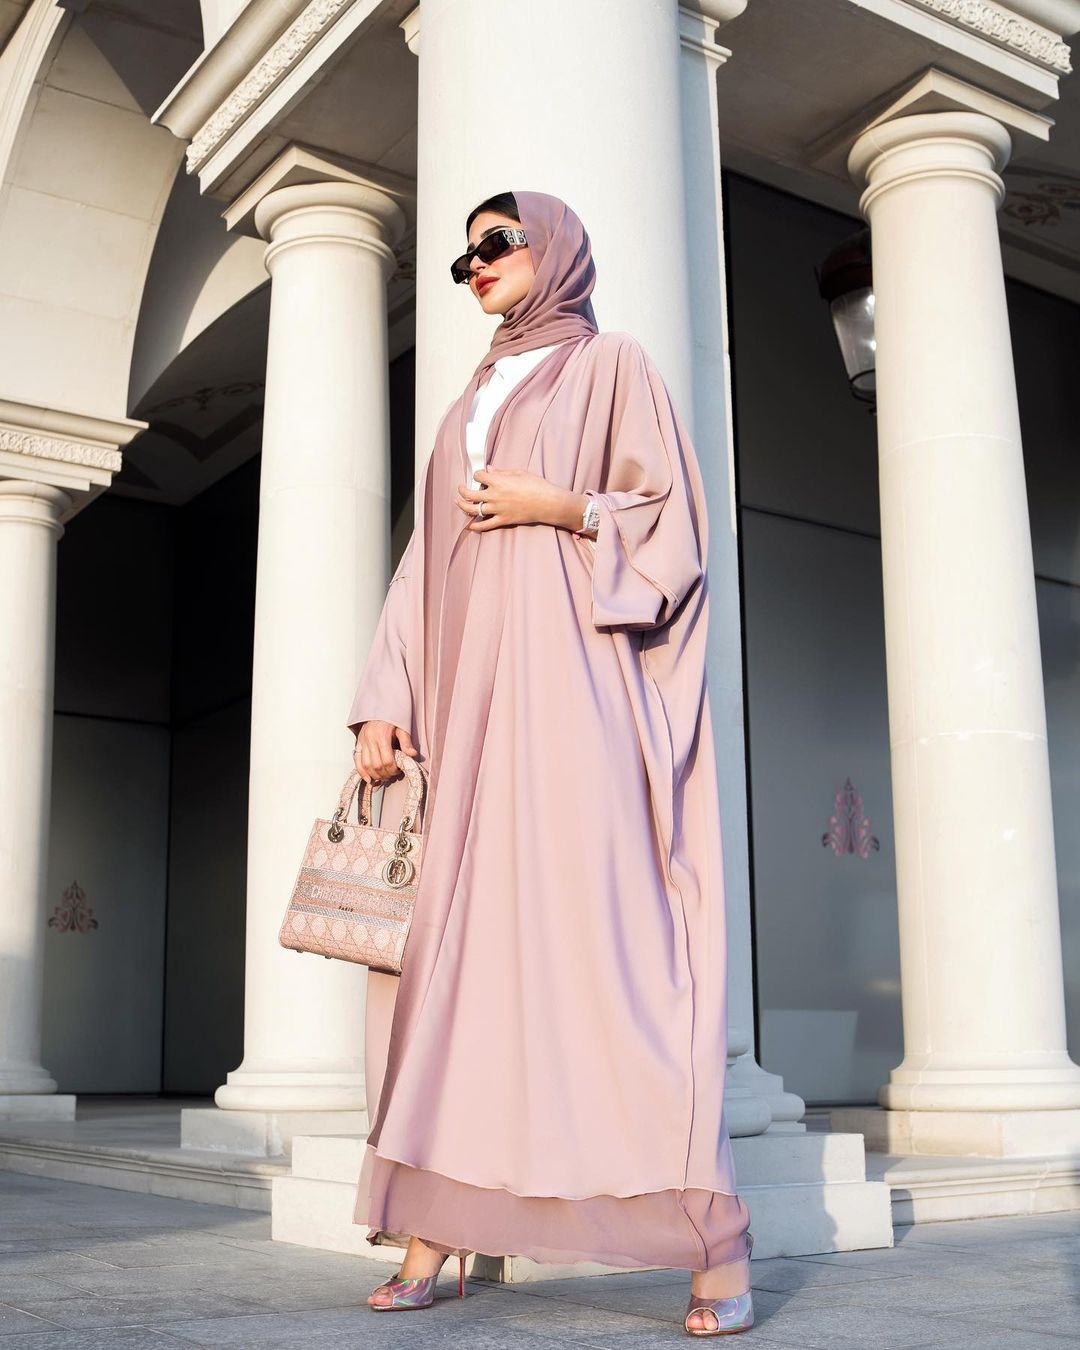  عمان اليوم - تنسيقات عصرية محتشمة تجمع بين الرقّة والأناقة من وحيّ مدونات الموضة